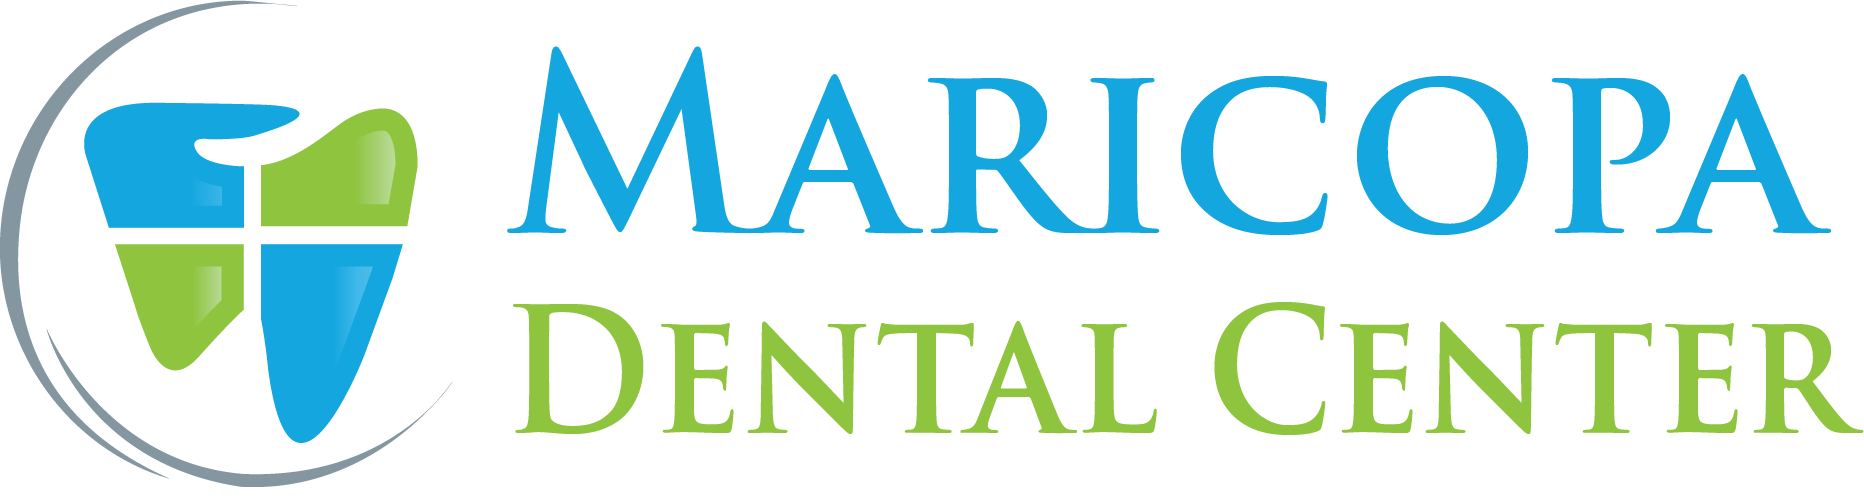 Maricopa-Dental-Center-Logo-Bruno-Moreira.png